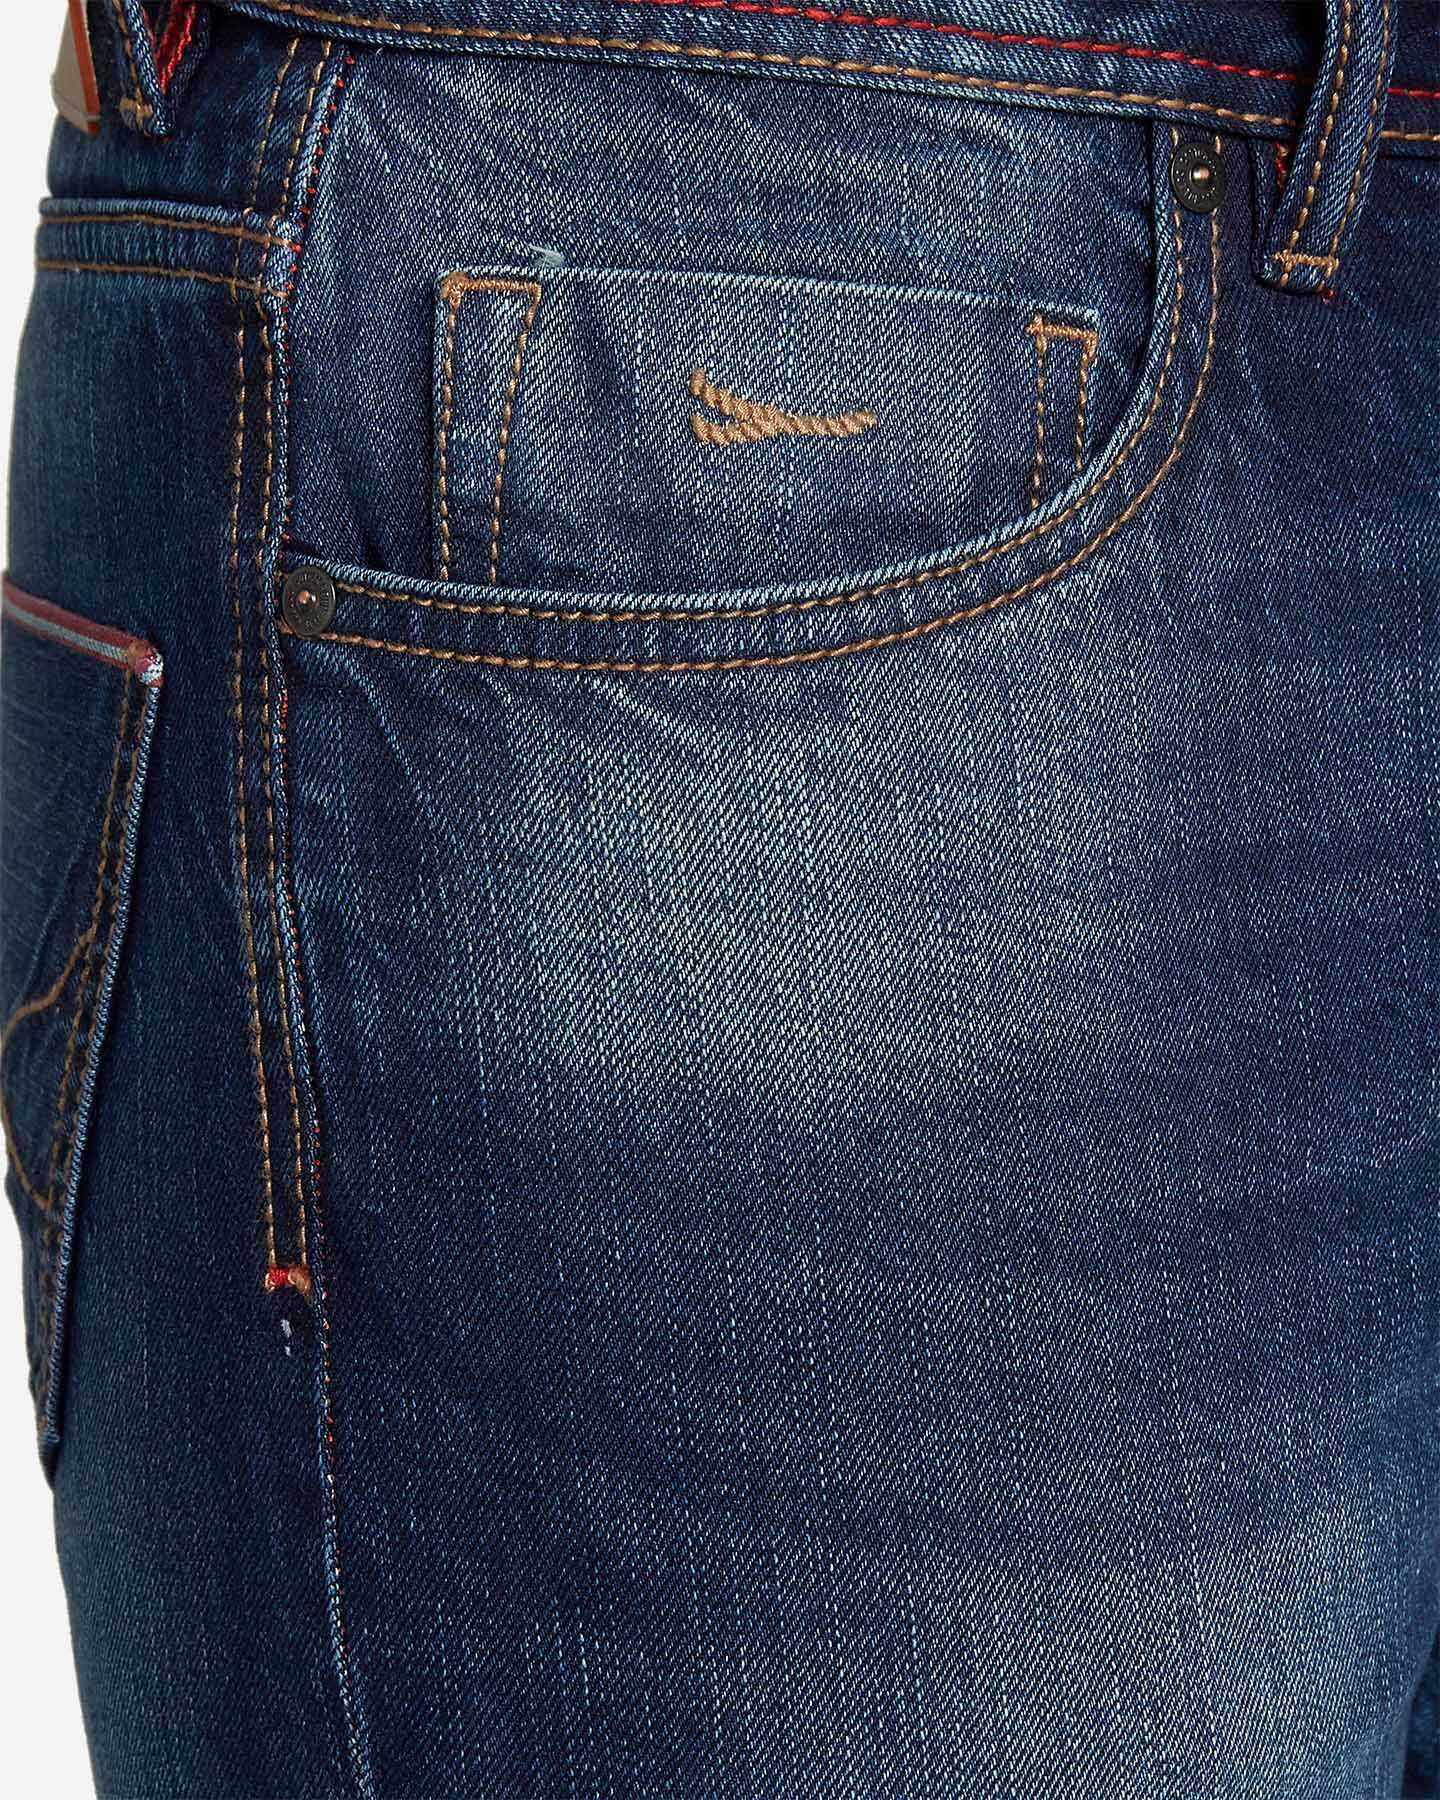  Jeans COTTON BELT WALDO MODERN REGULAR M S4070903|DD|30 scatto 3